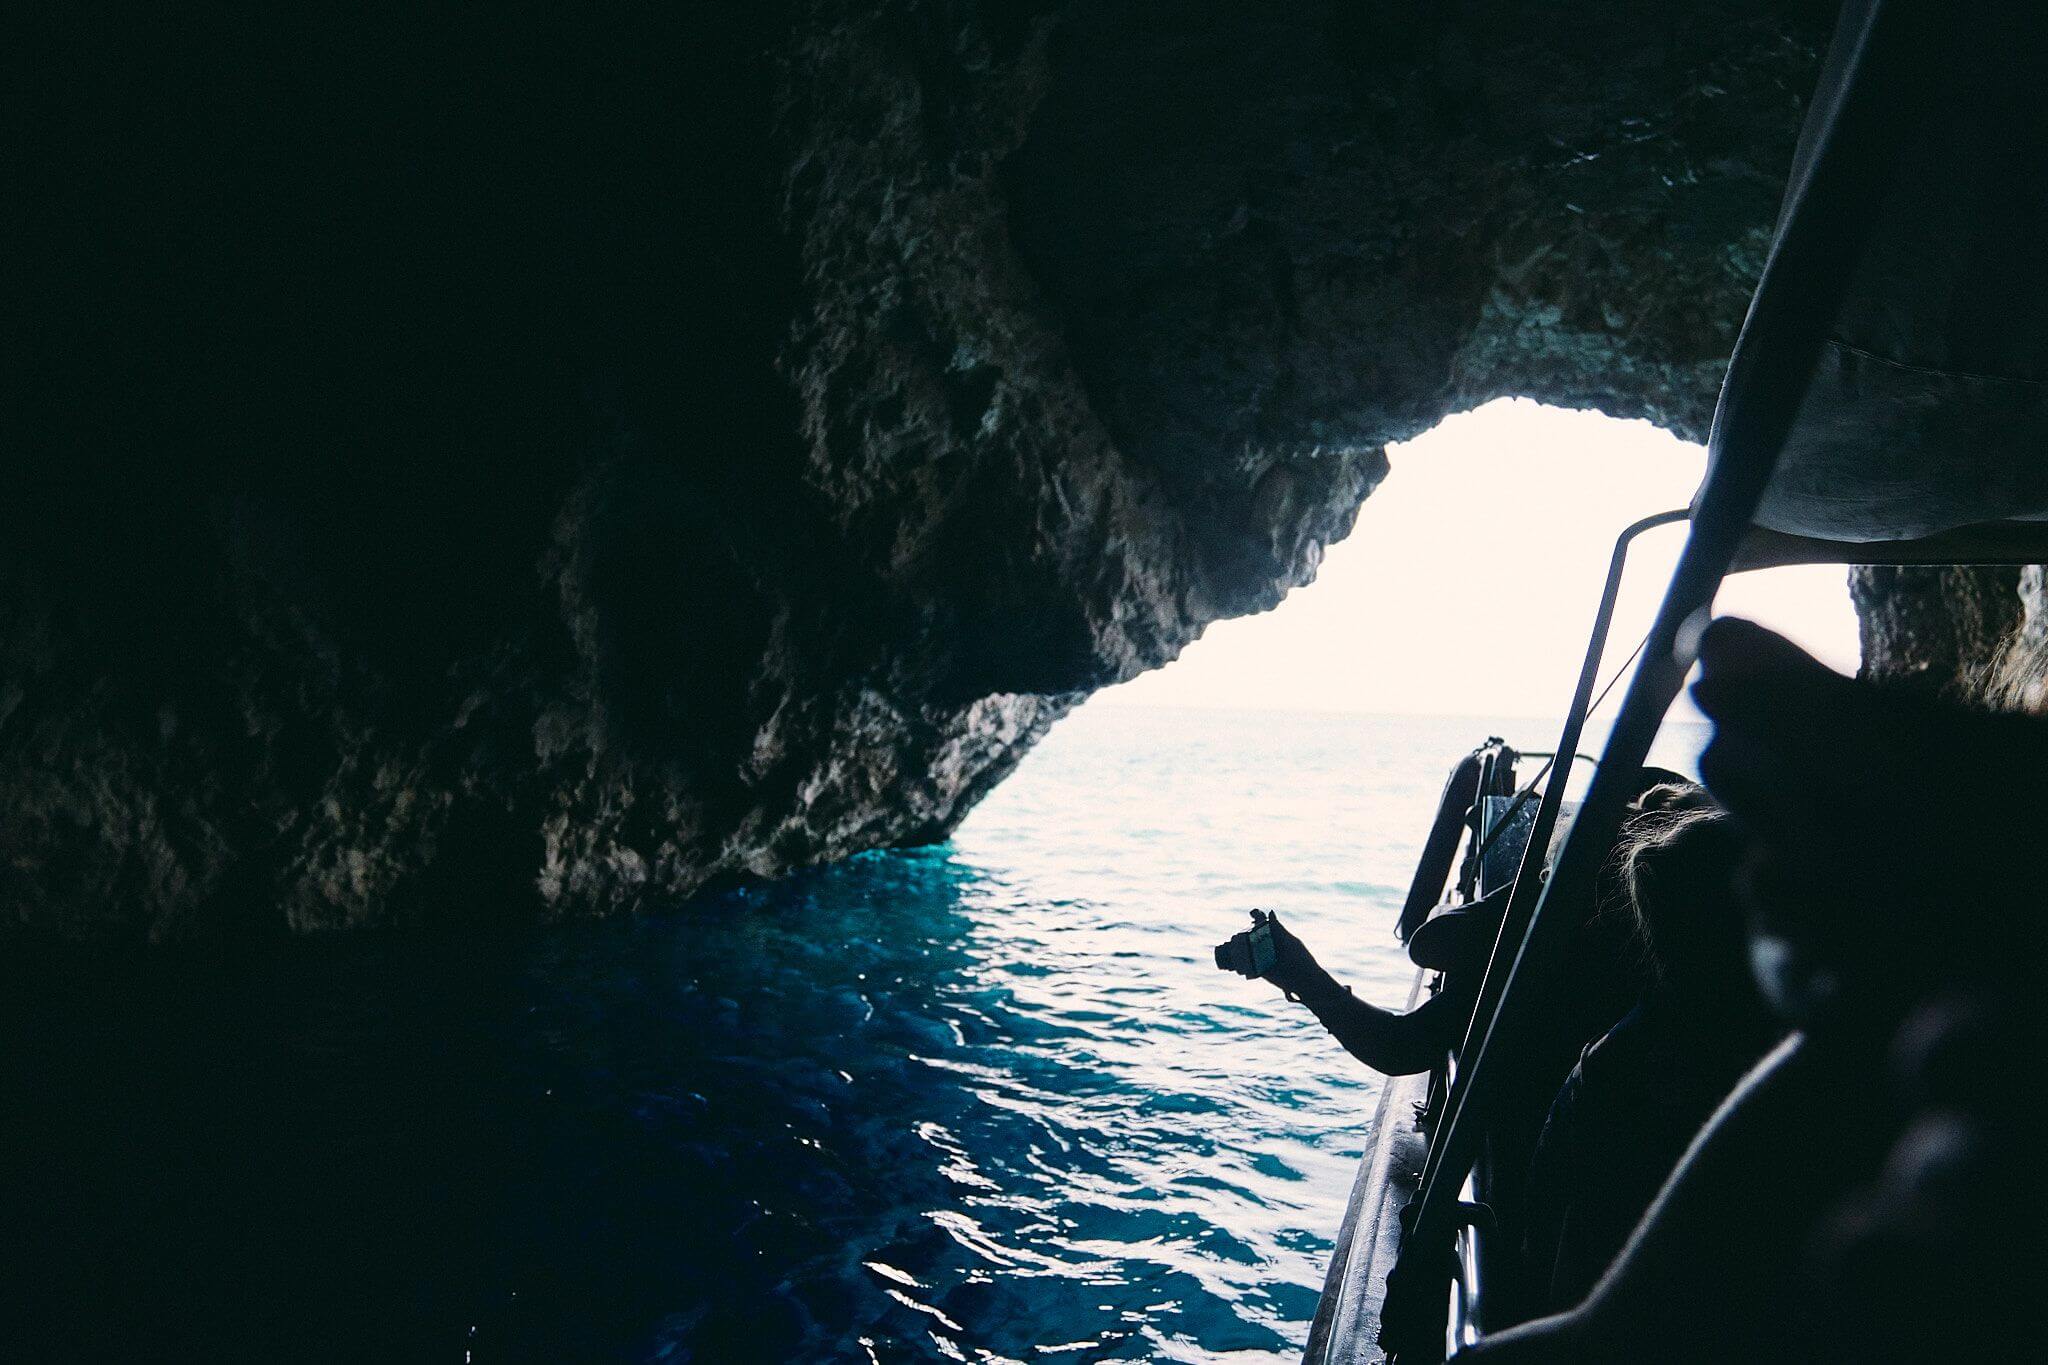 藍洞 Blue Cave 沉船灣 Navagio ⎈ 希臘扎金索斯 ⎈ 遠觀近看雙行程全攻略